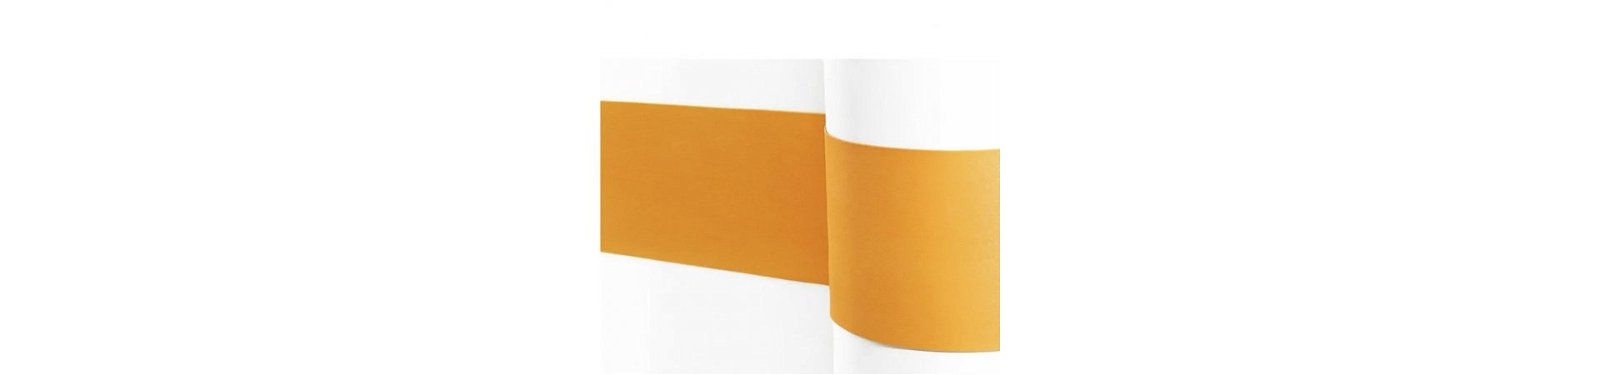 Flexibele bumpers op maat gemaakt in verschillende kleuren fabrikant goedgekeurd